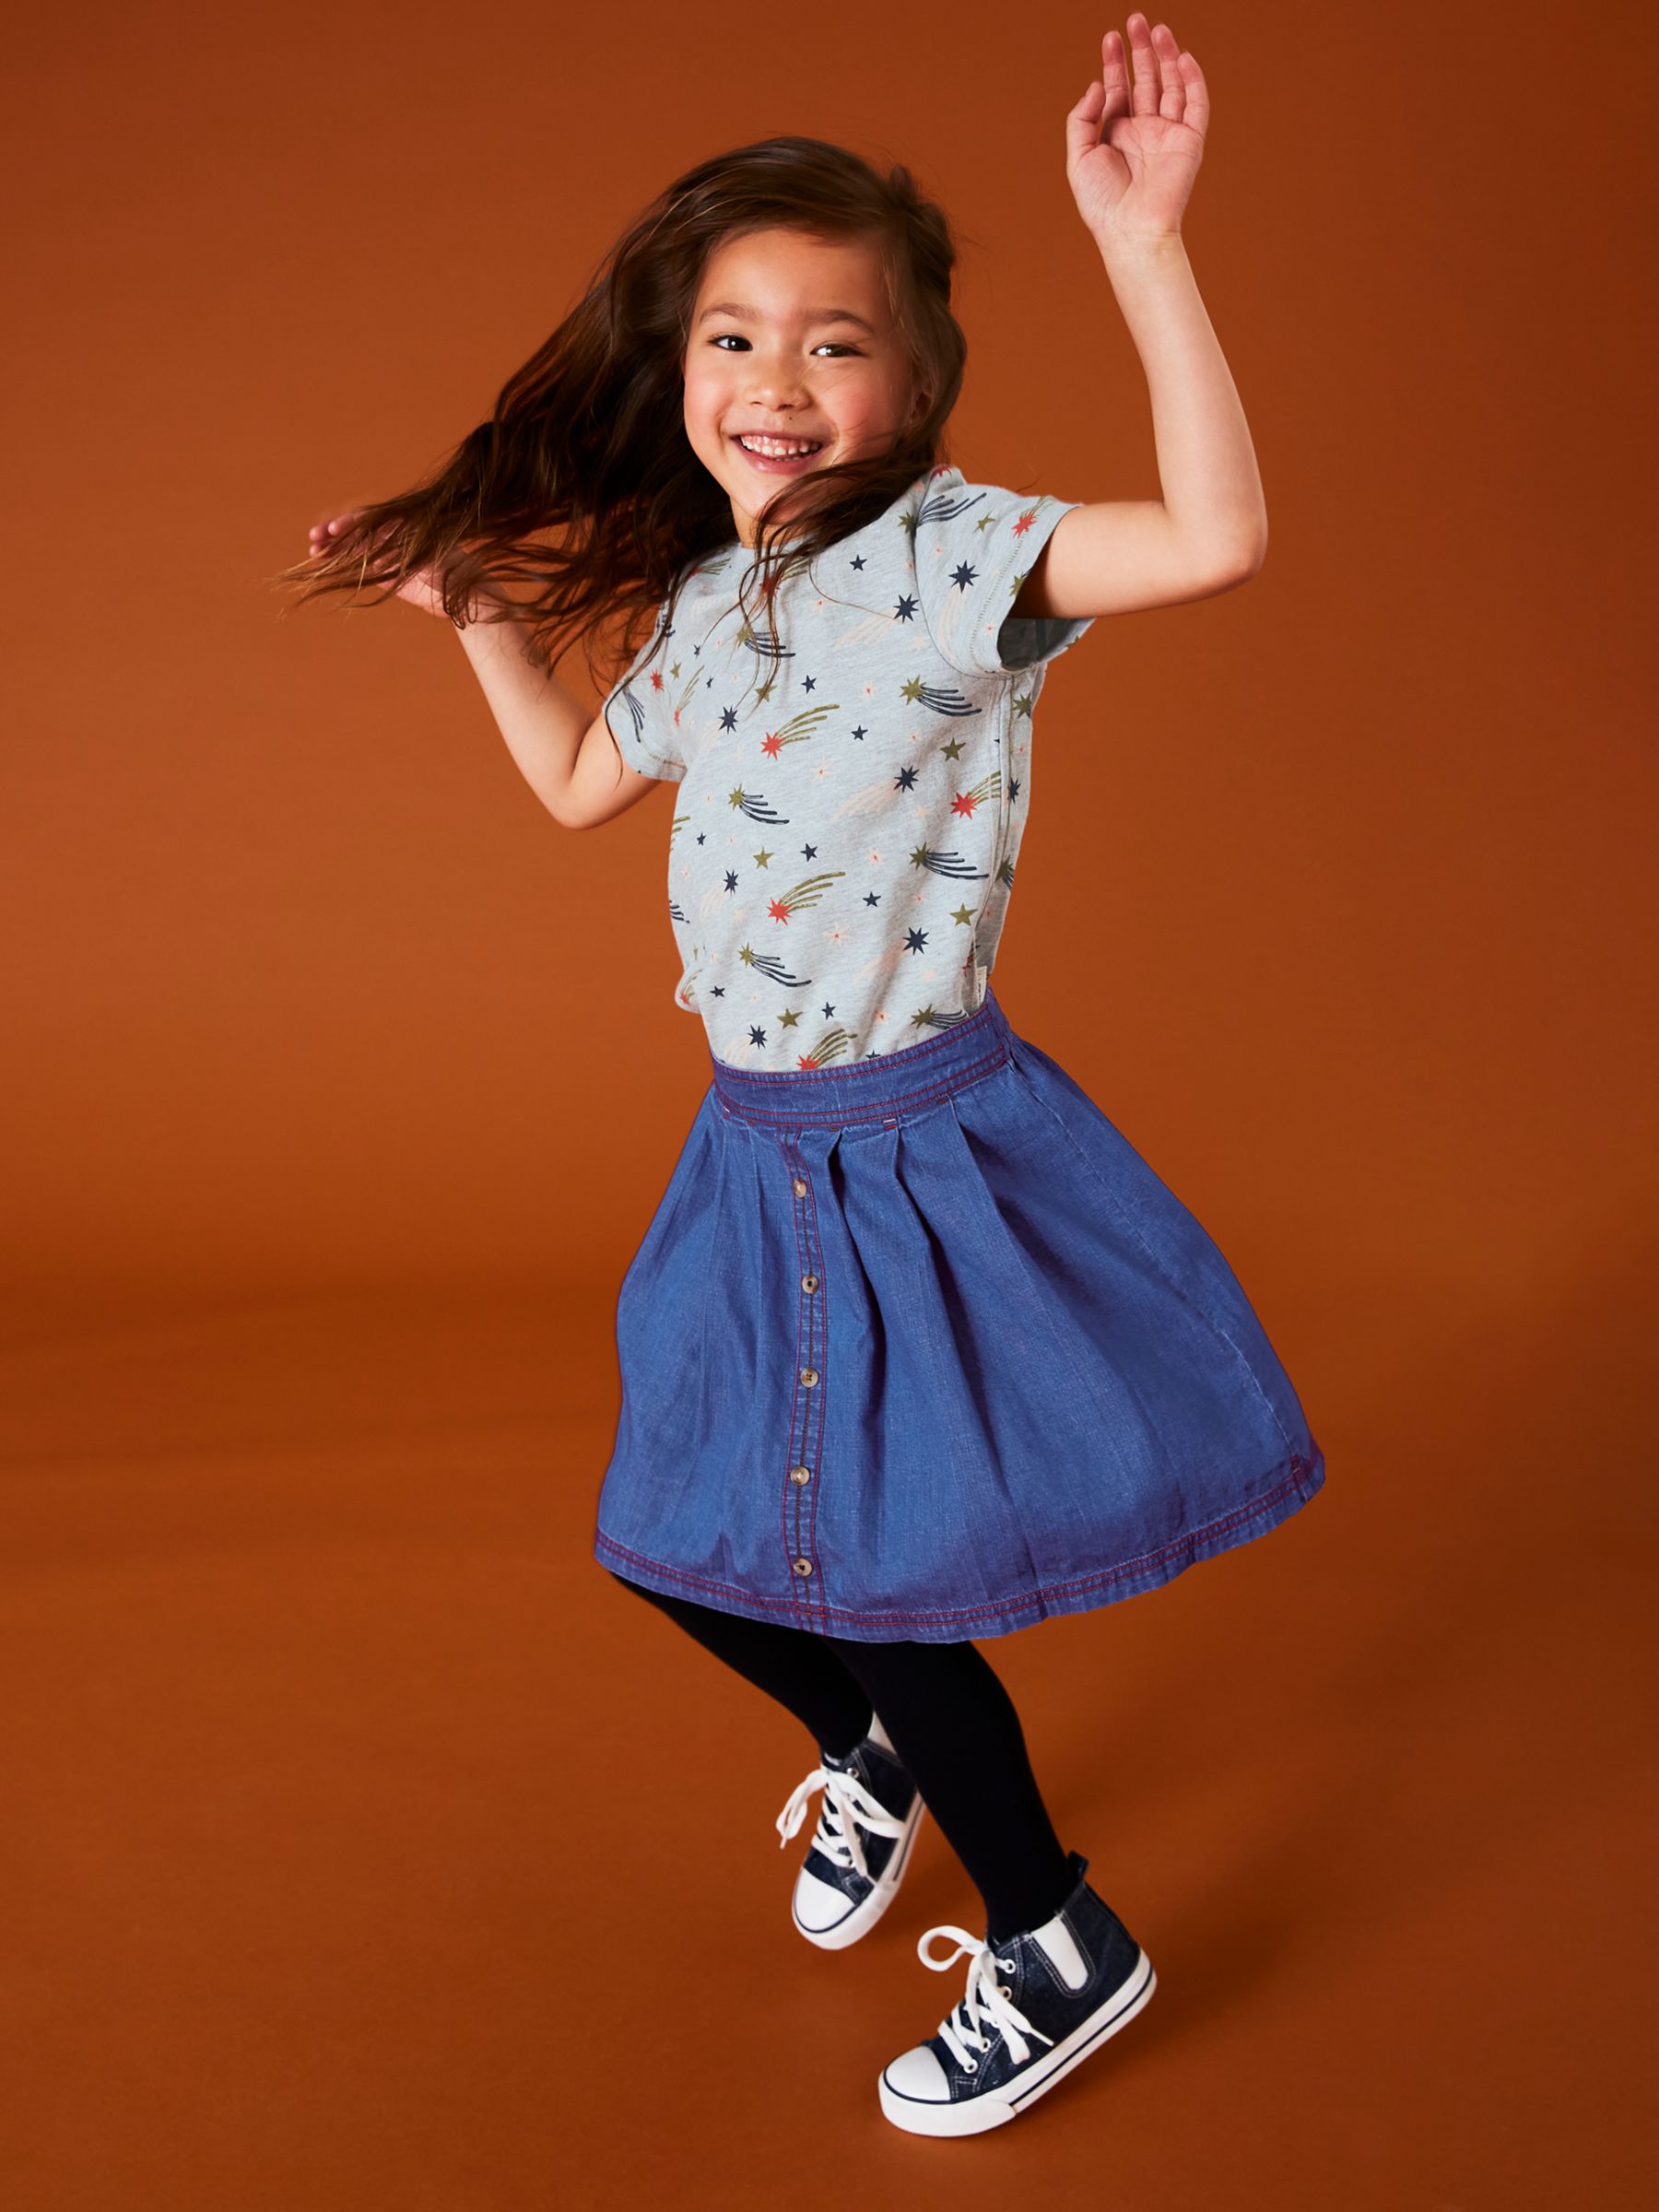 Buy White Stuff Kids' Nora Denim Skirt, Blue Online at johnlewis.com